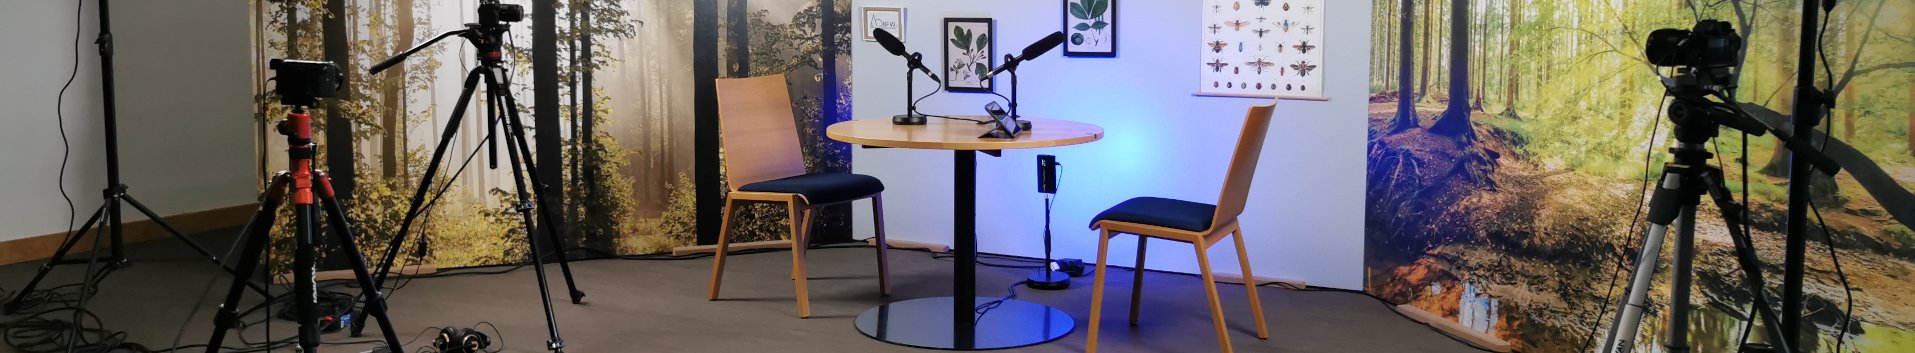 Aufnahmeset des Videopodcast mit zwei Stühlen, einem Tisch und einer Wald-Fototapete im Hintergrund